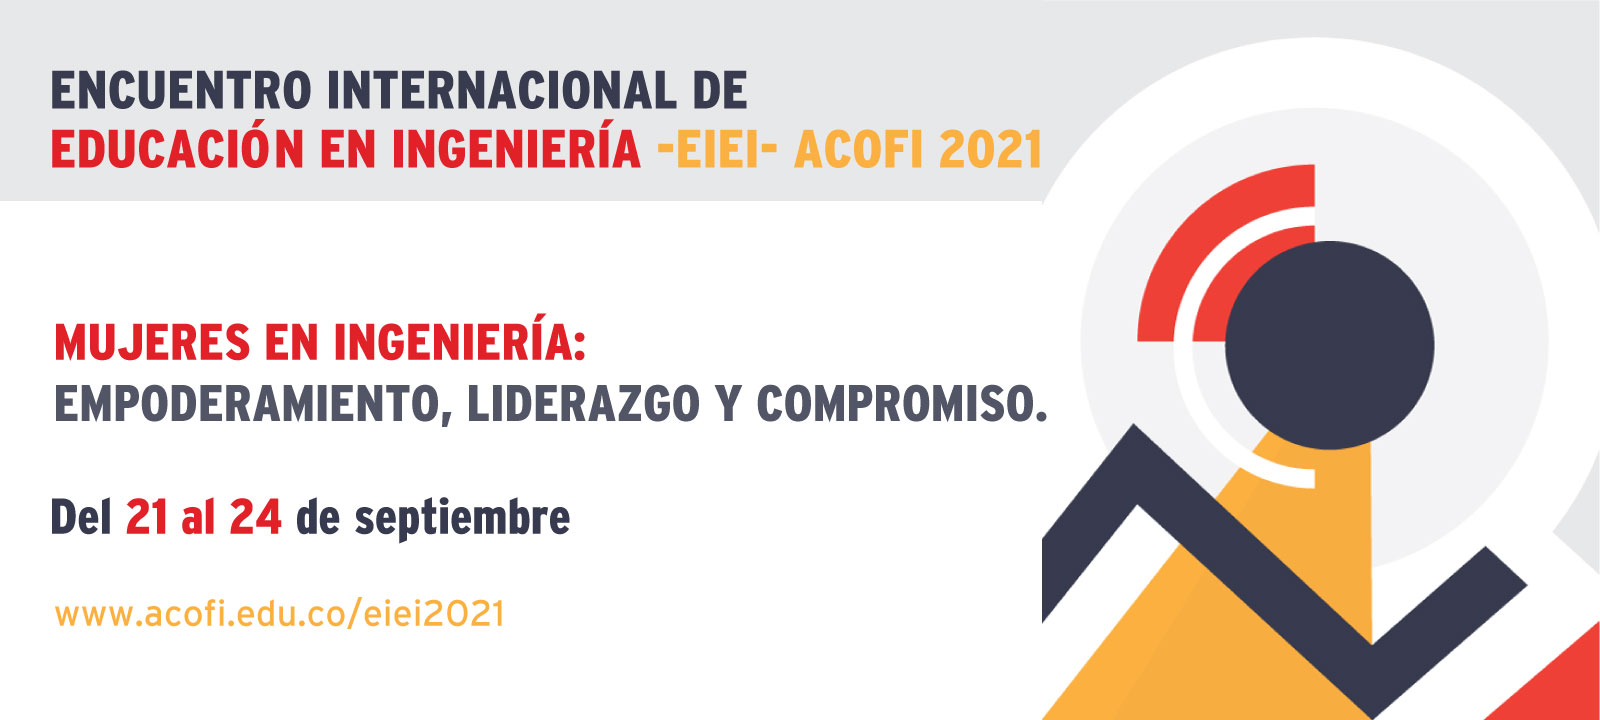 Encuentro Internacional de Educación en Ingeniería -EIEI- ACOFI 2021